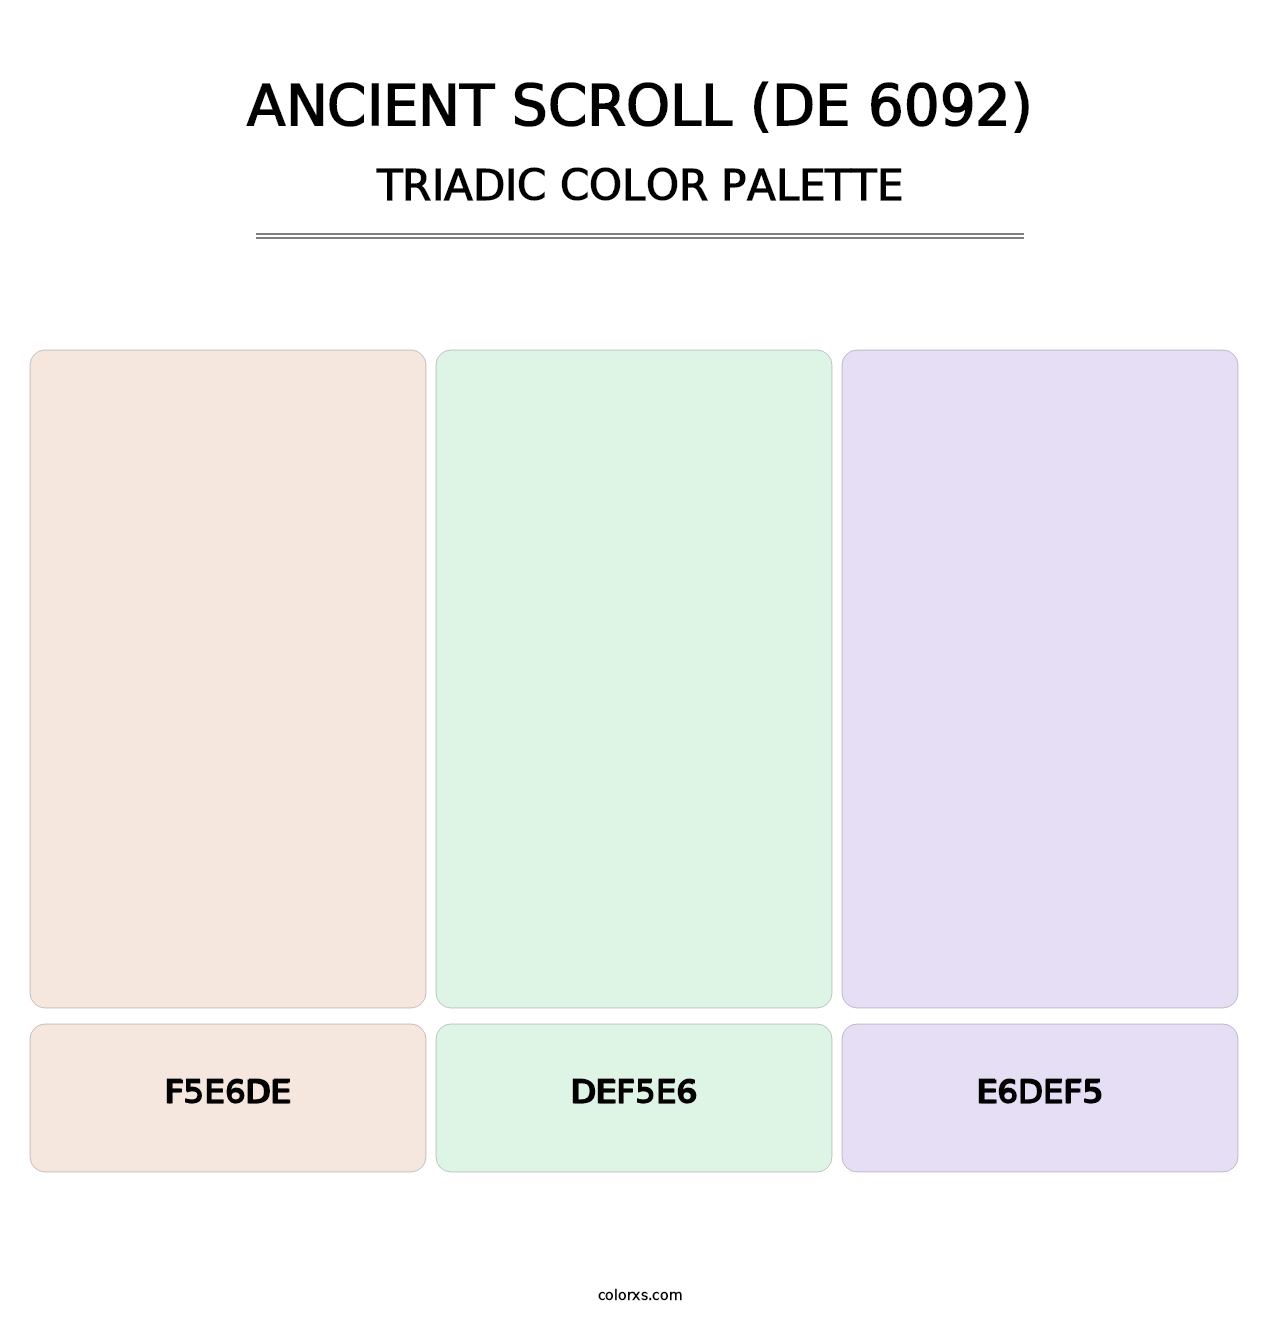 Ancient Scroll (DE 6092) - Triadic Color Palette